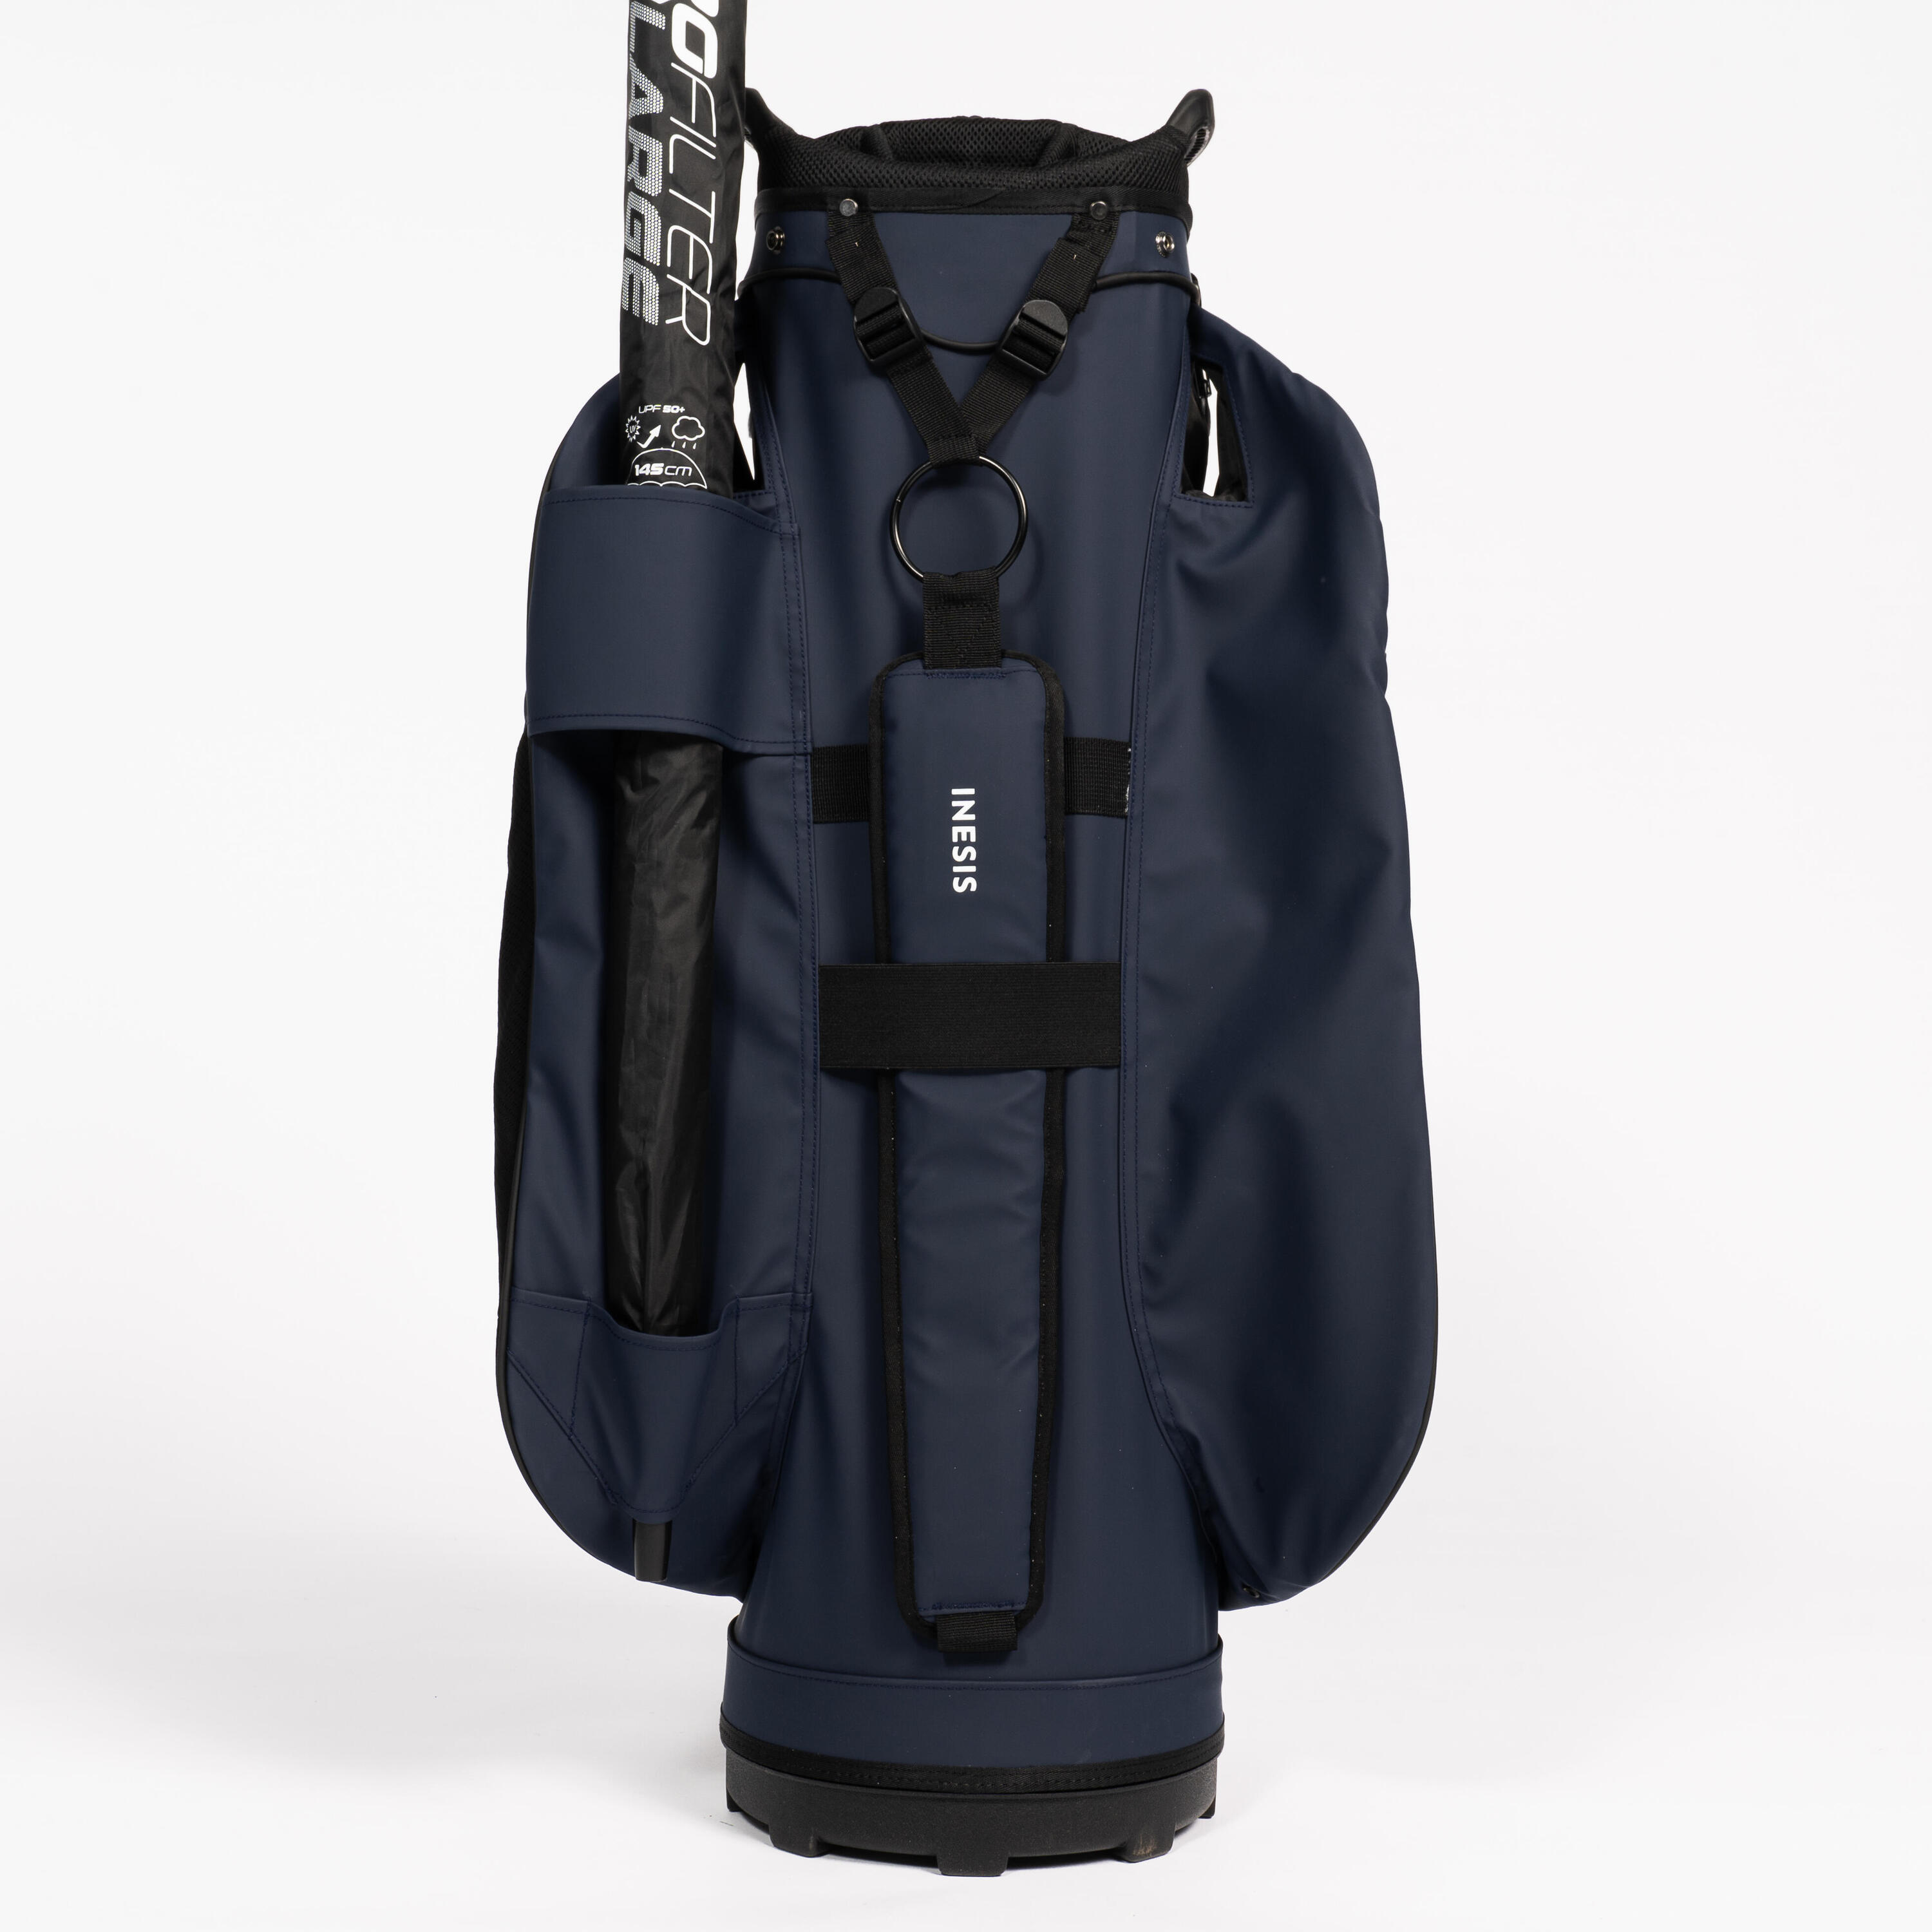 Golf trolley bag waterproof – INESIS Cart blue 11/12